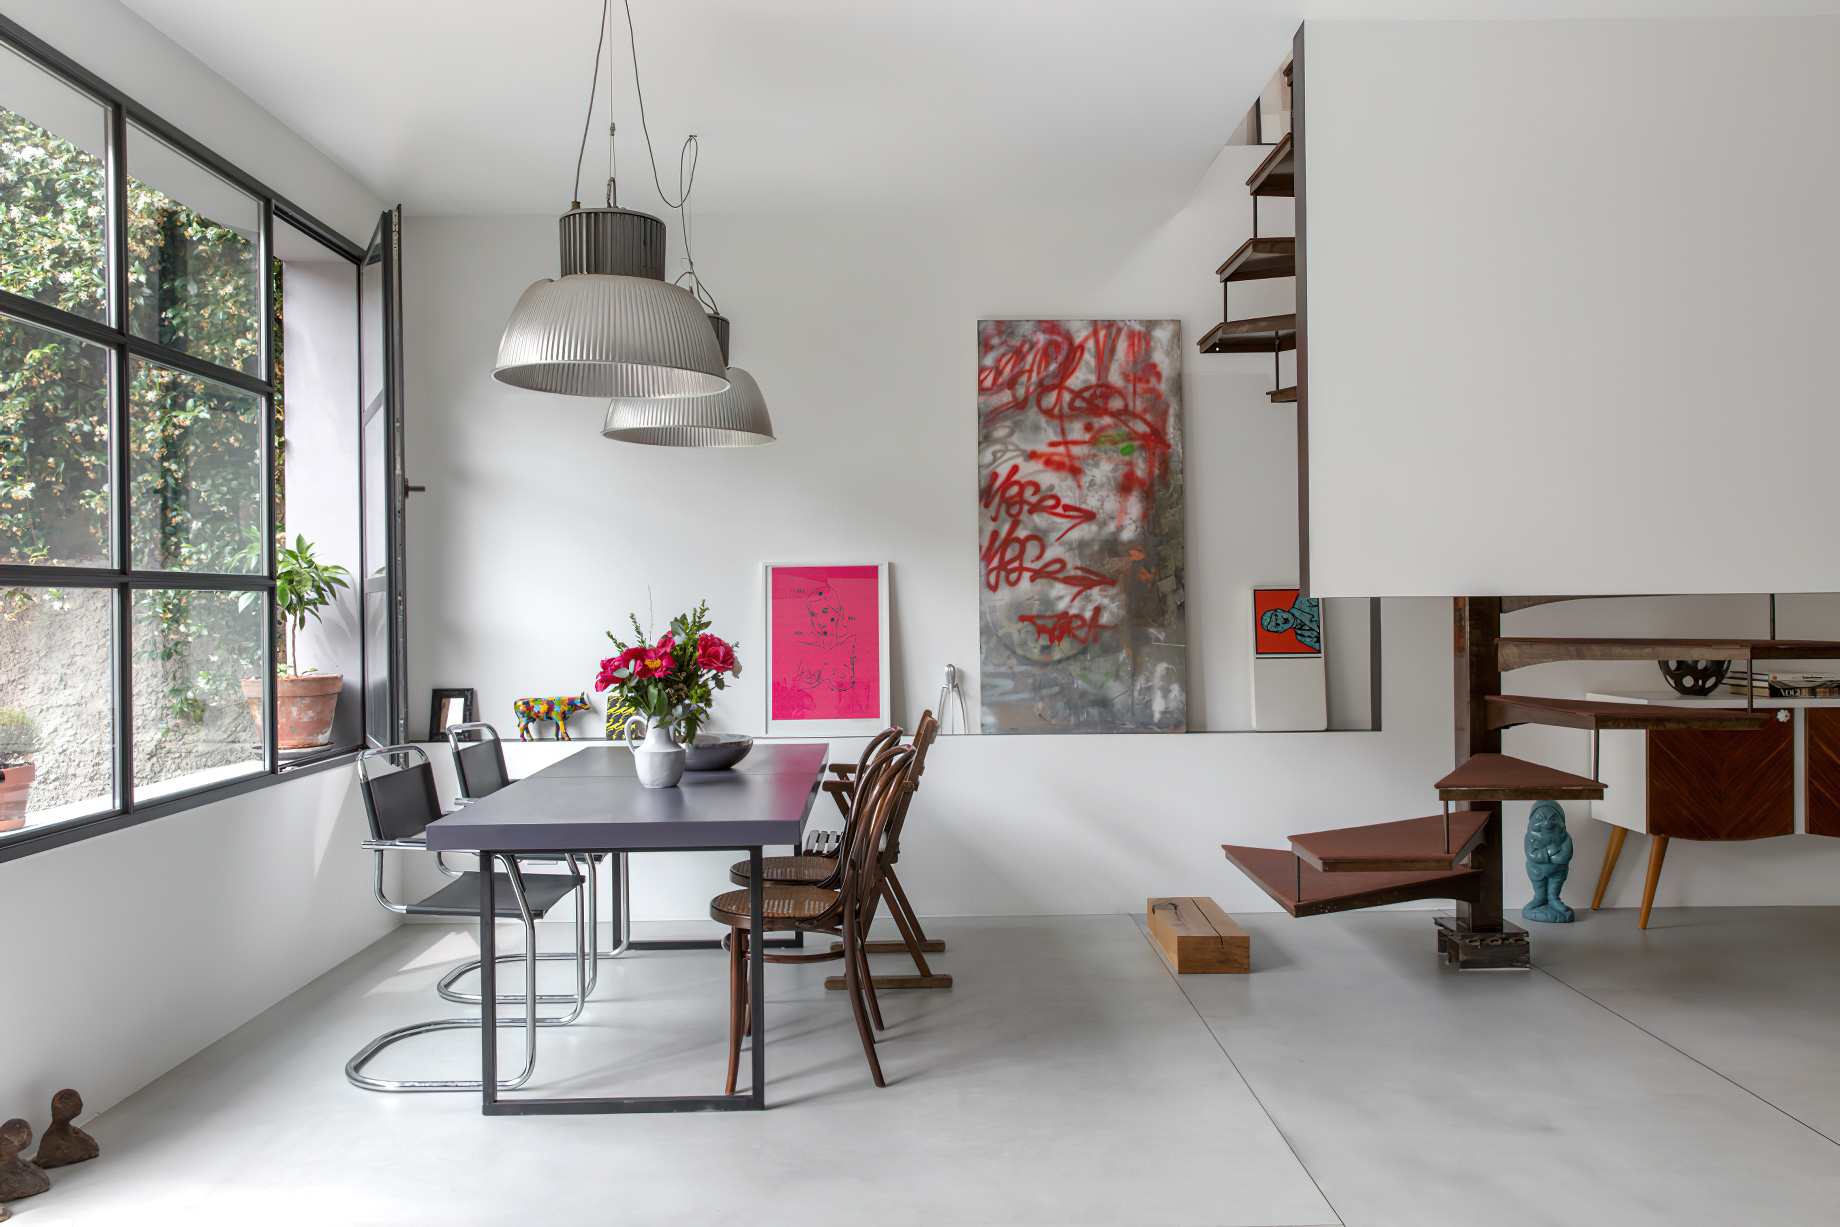 Casa Cialdini Eclectic Interior Design Milan, Italy - Stefania Micotti